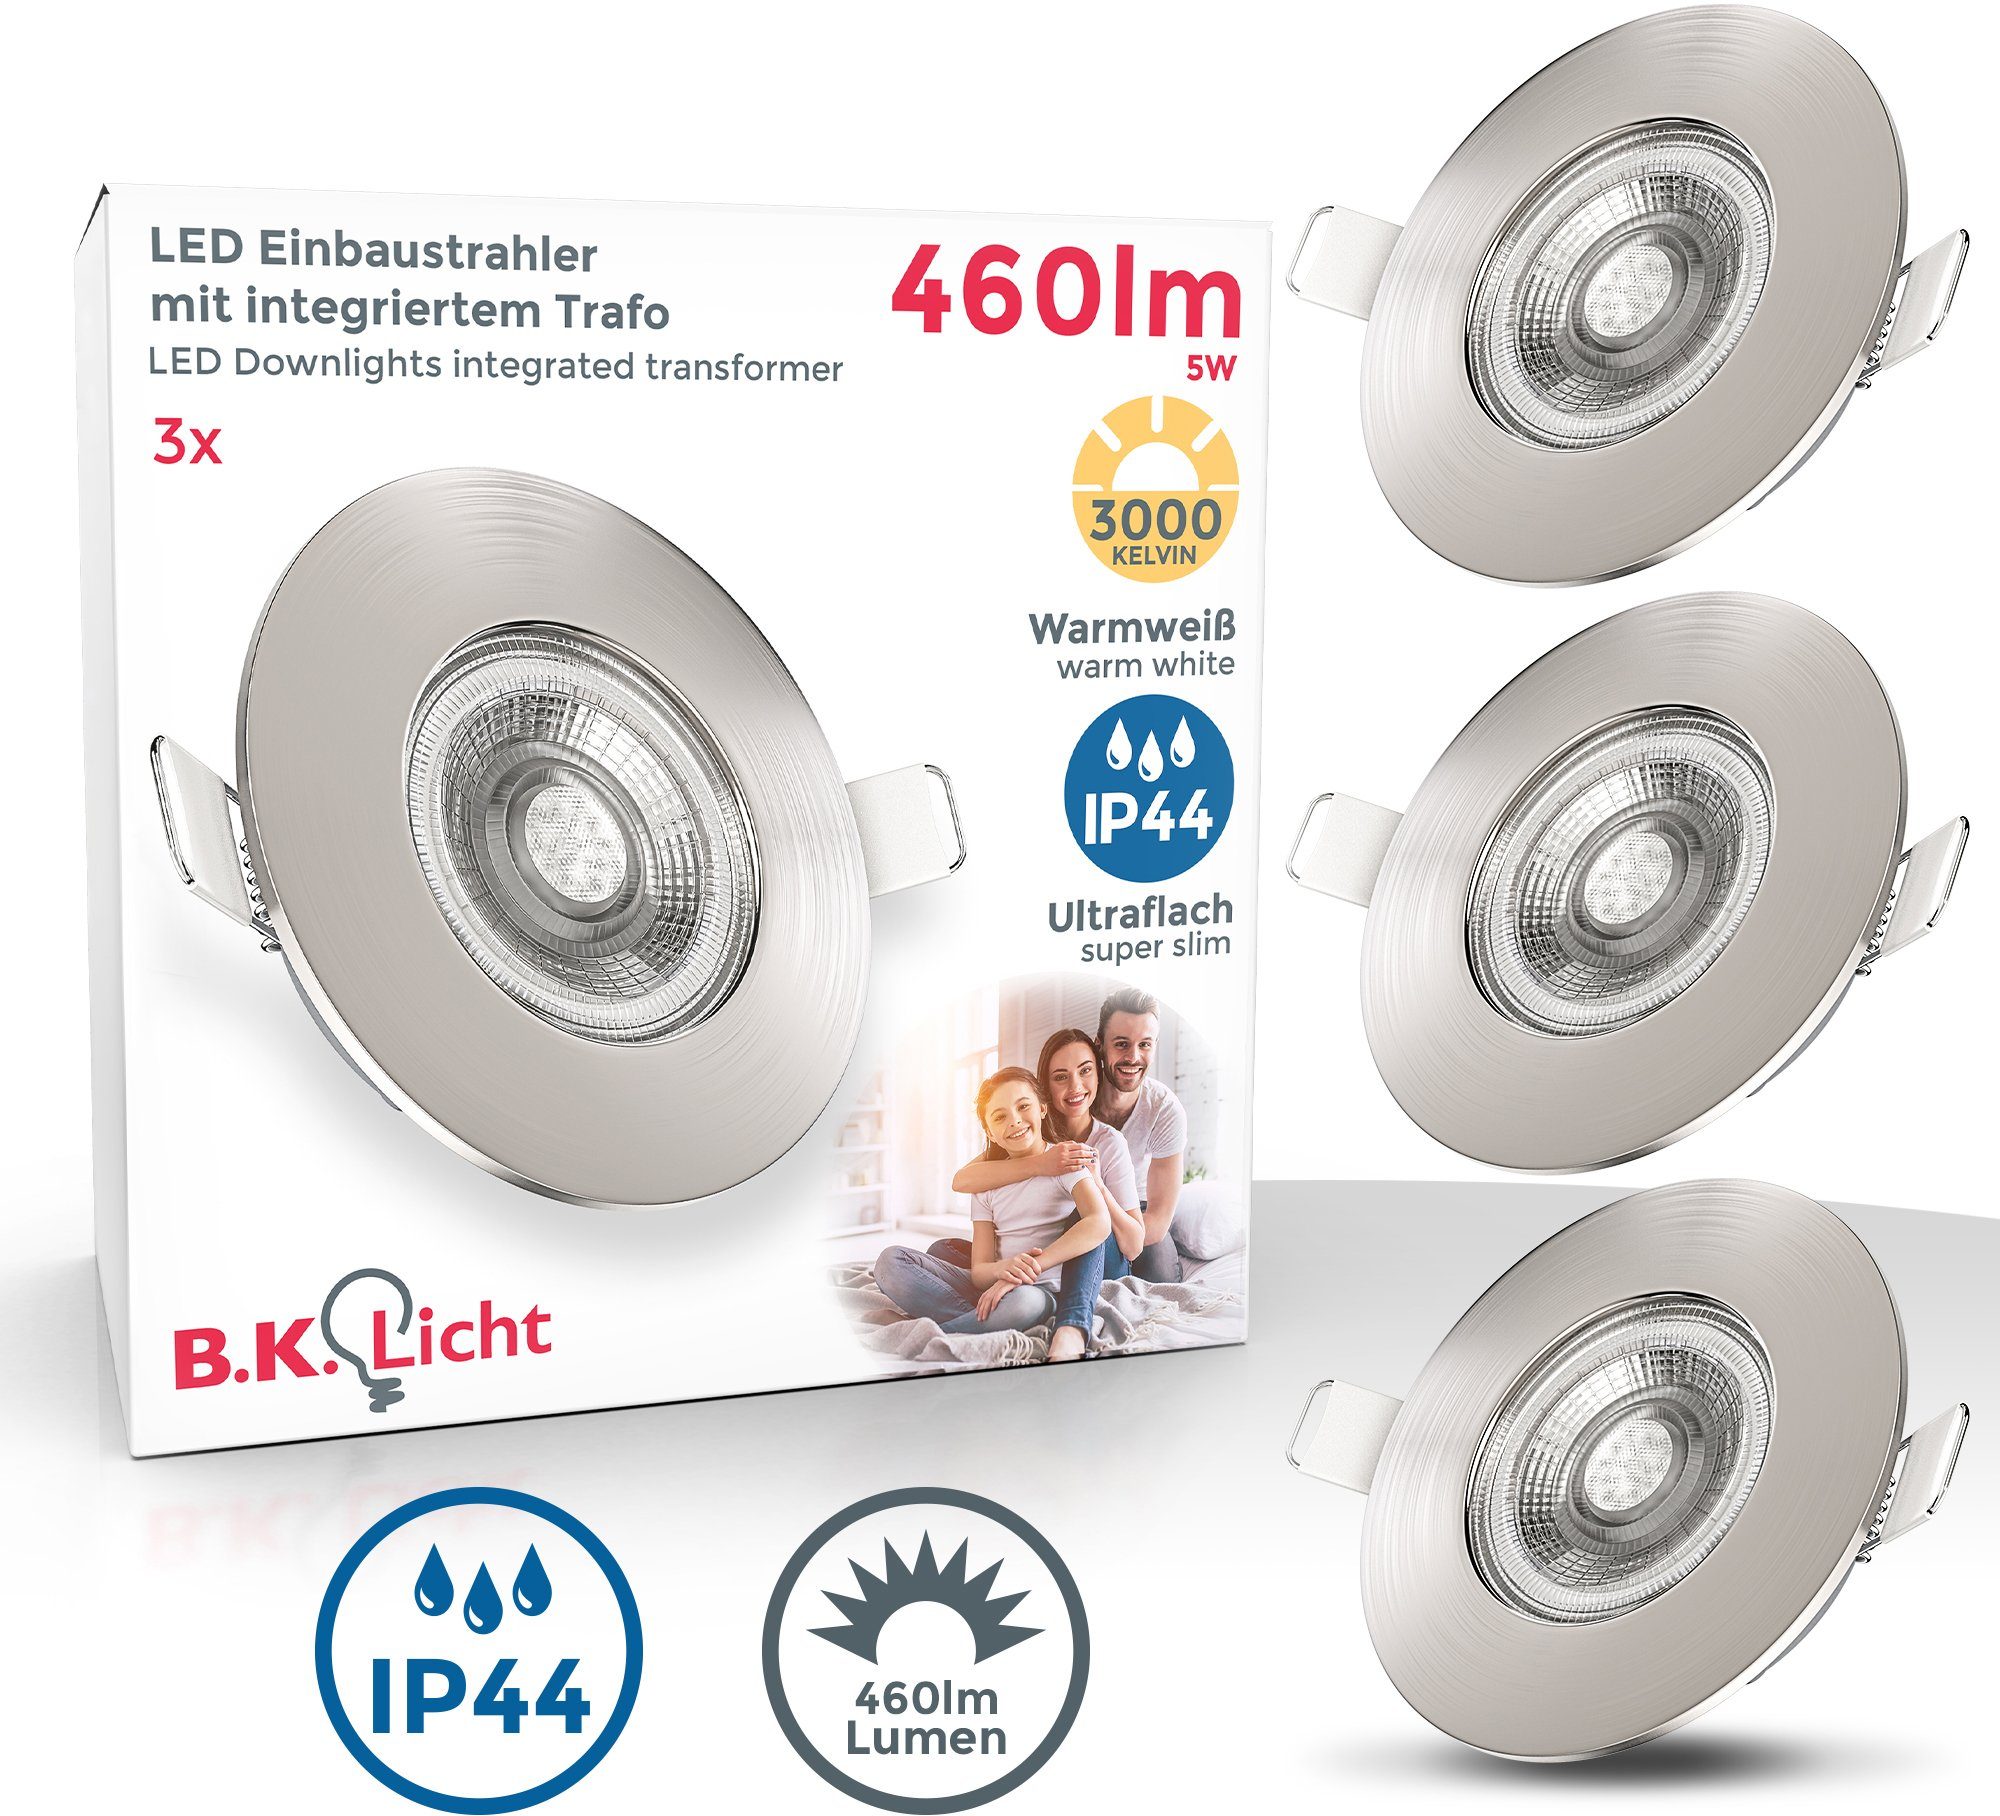 B.K.Licht LED Einbauleuchte, LED fest integriert, Einbaustrahler ultraflach Spots Bad Deckenspots Warmweiß, LED Lampe IP44